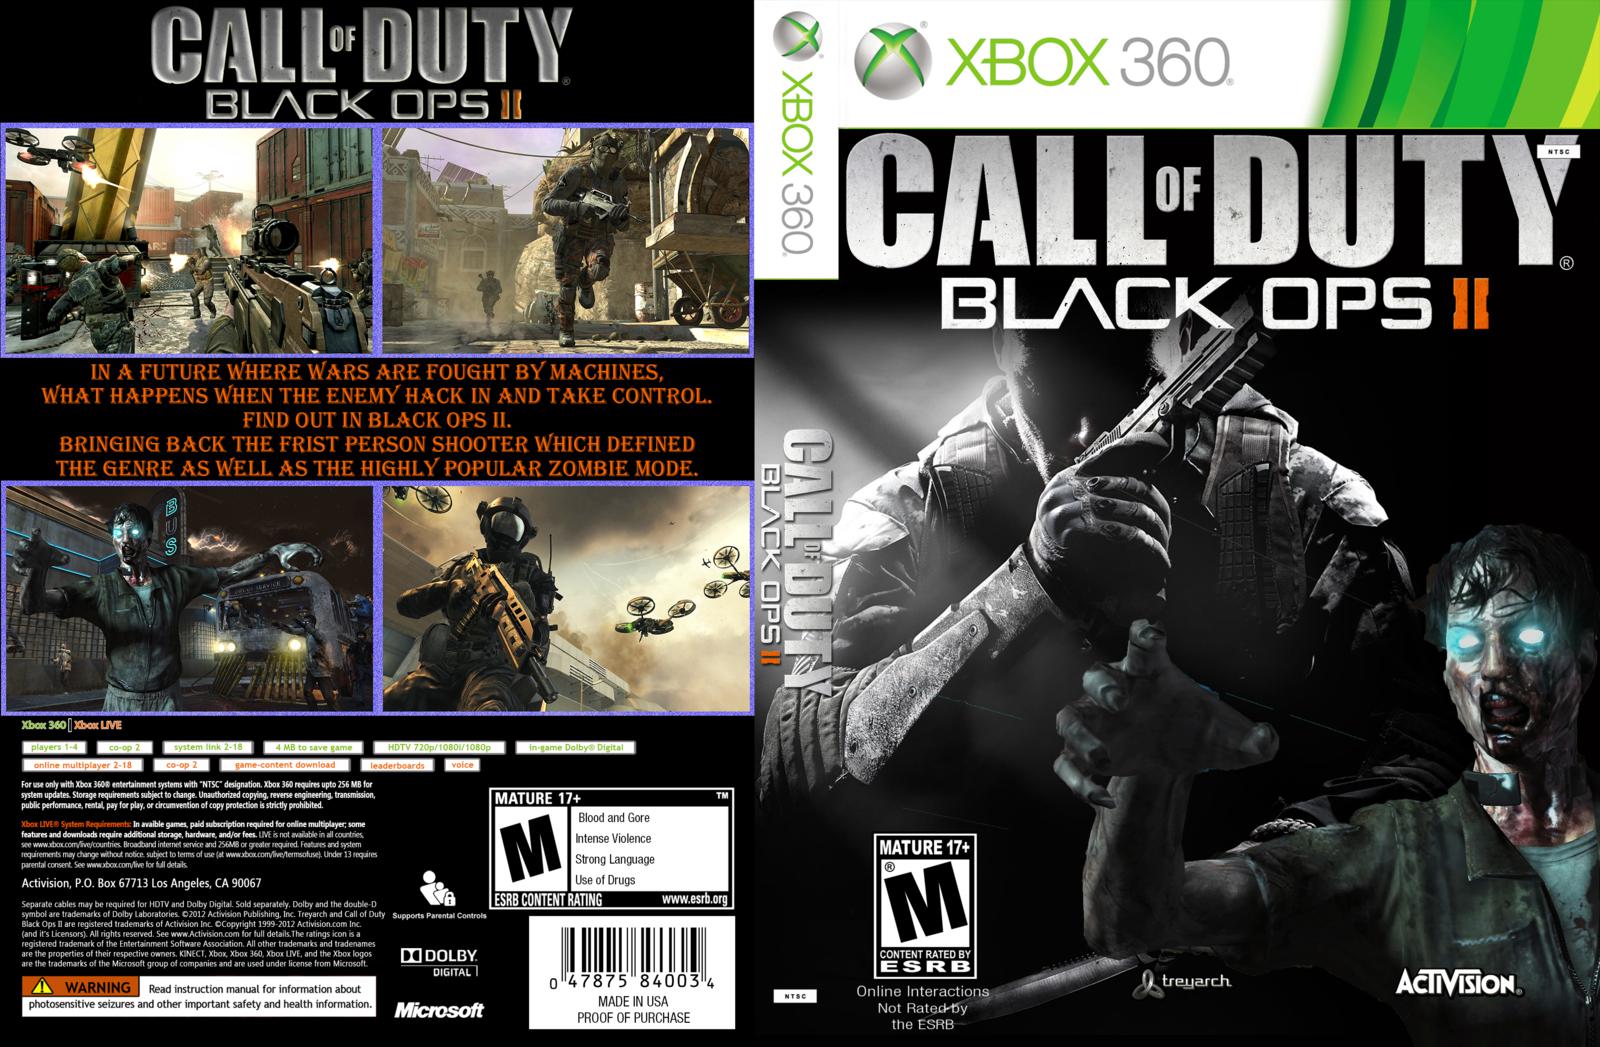 Call of duty xbox game. Black ops Xbox 360 обложка. Black ops 2 Xbox 360 обложка. Cod Black ops 2 обложка Xbox 360. Call of Duty Black ops II Xbox 360.